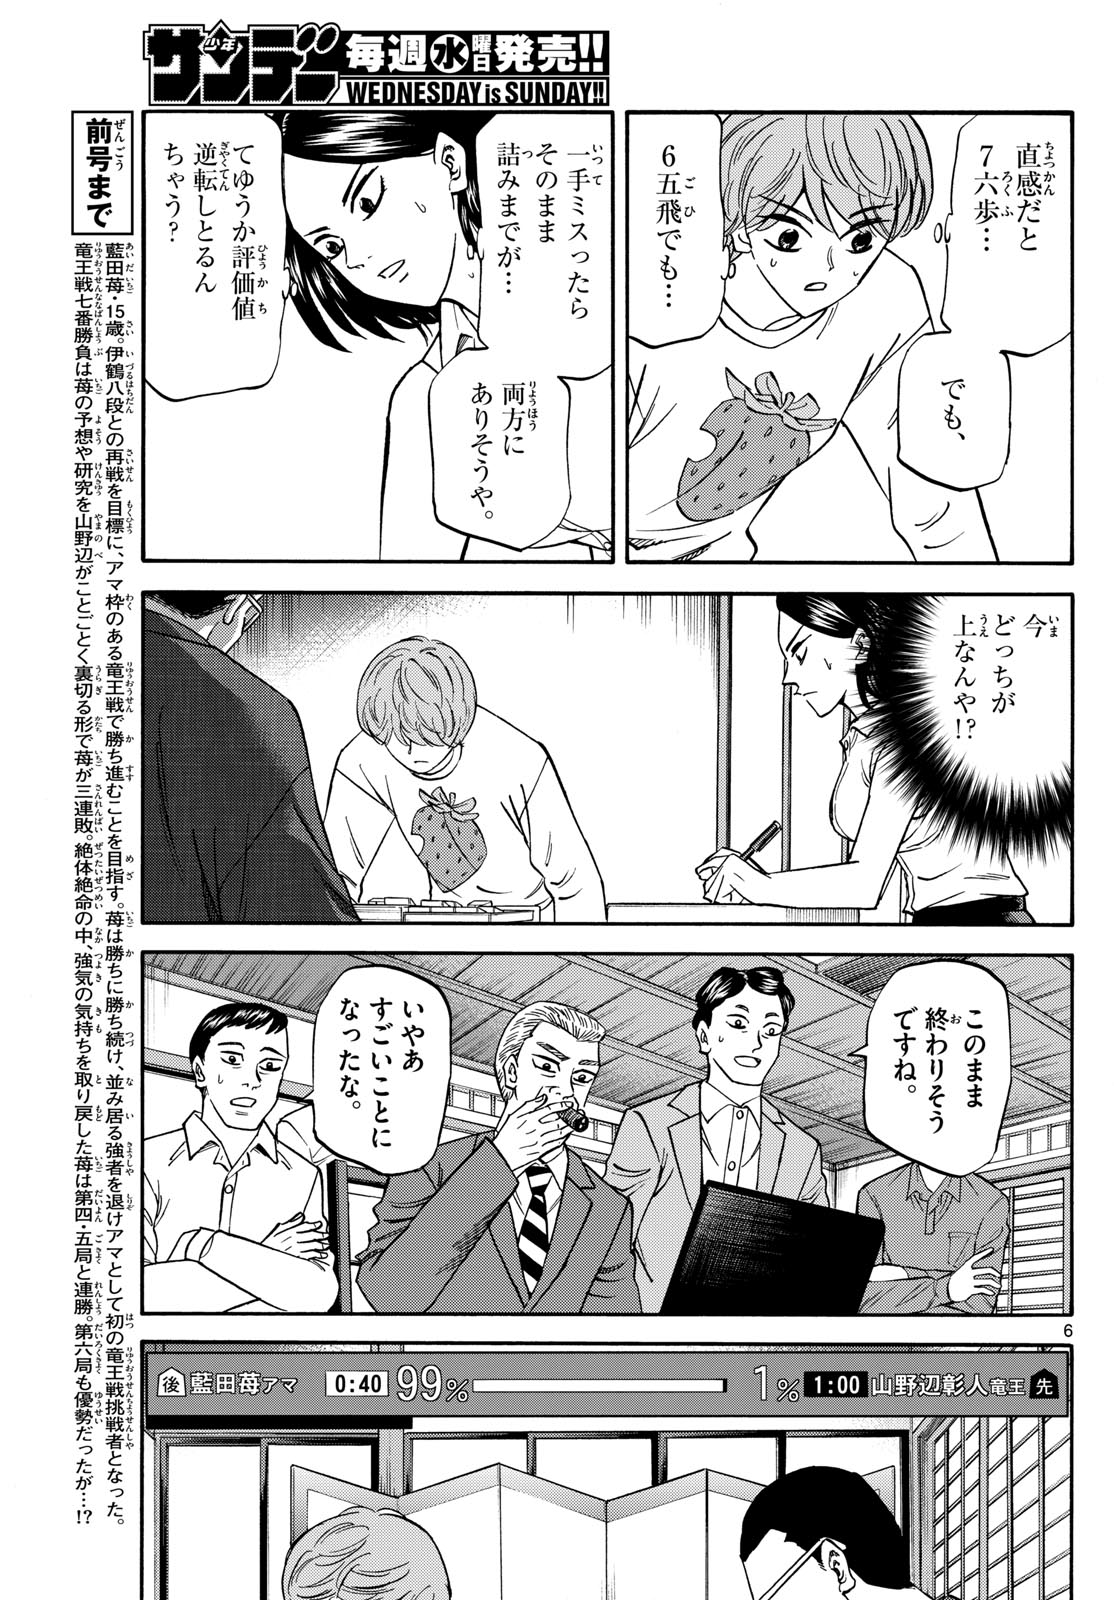 Tatsu to Ichigo - Chapter 170 - Page 6